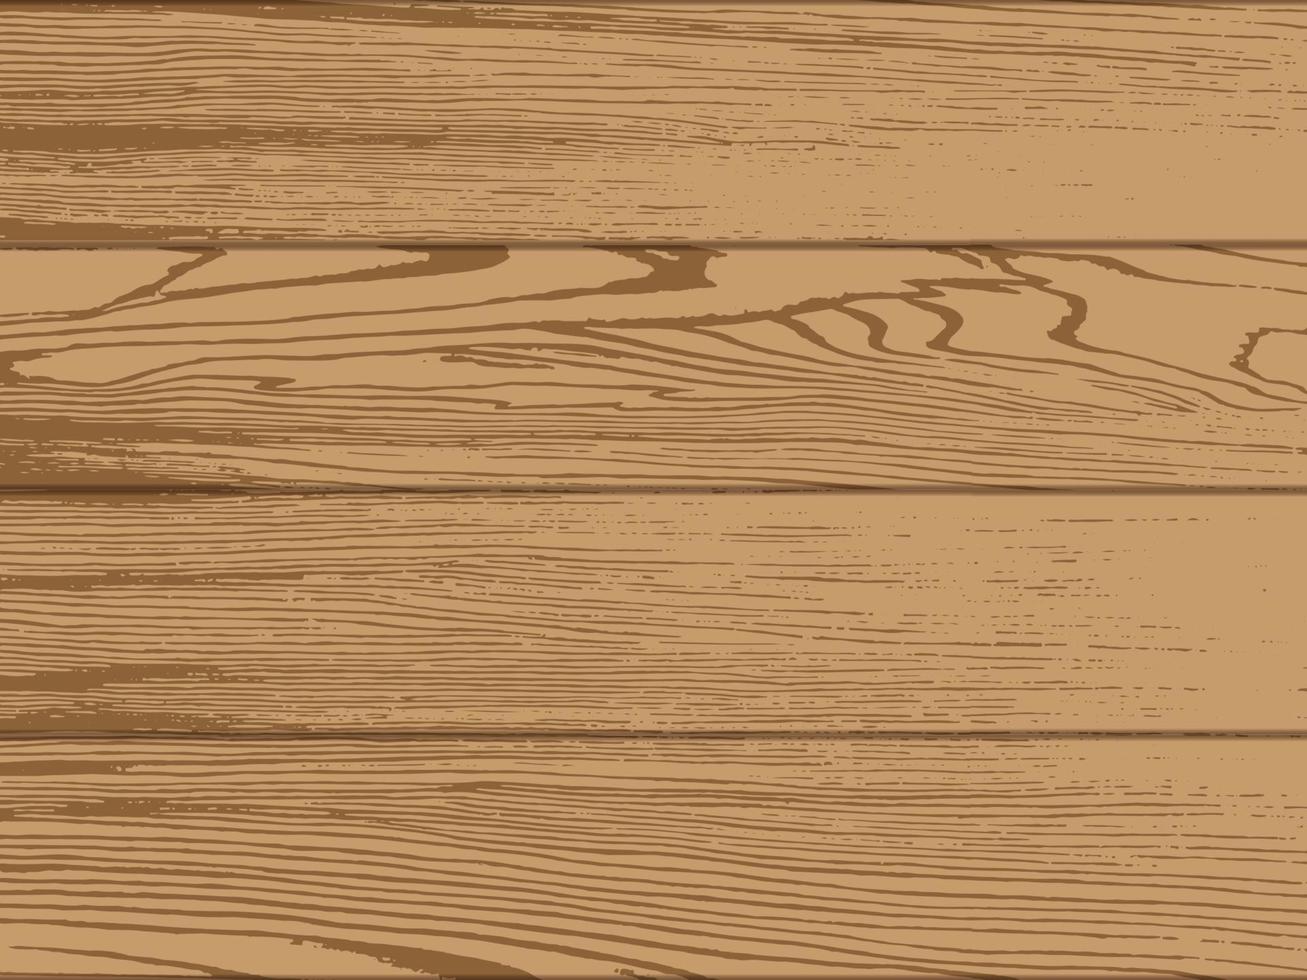 Holz Textur Hintergrund, Vektor-Illustration vektor